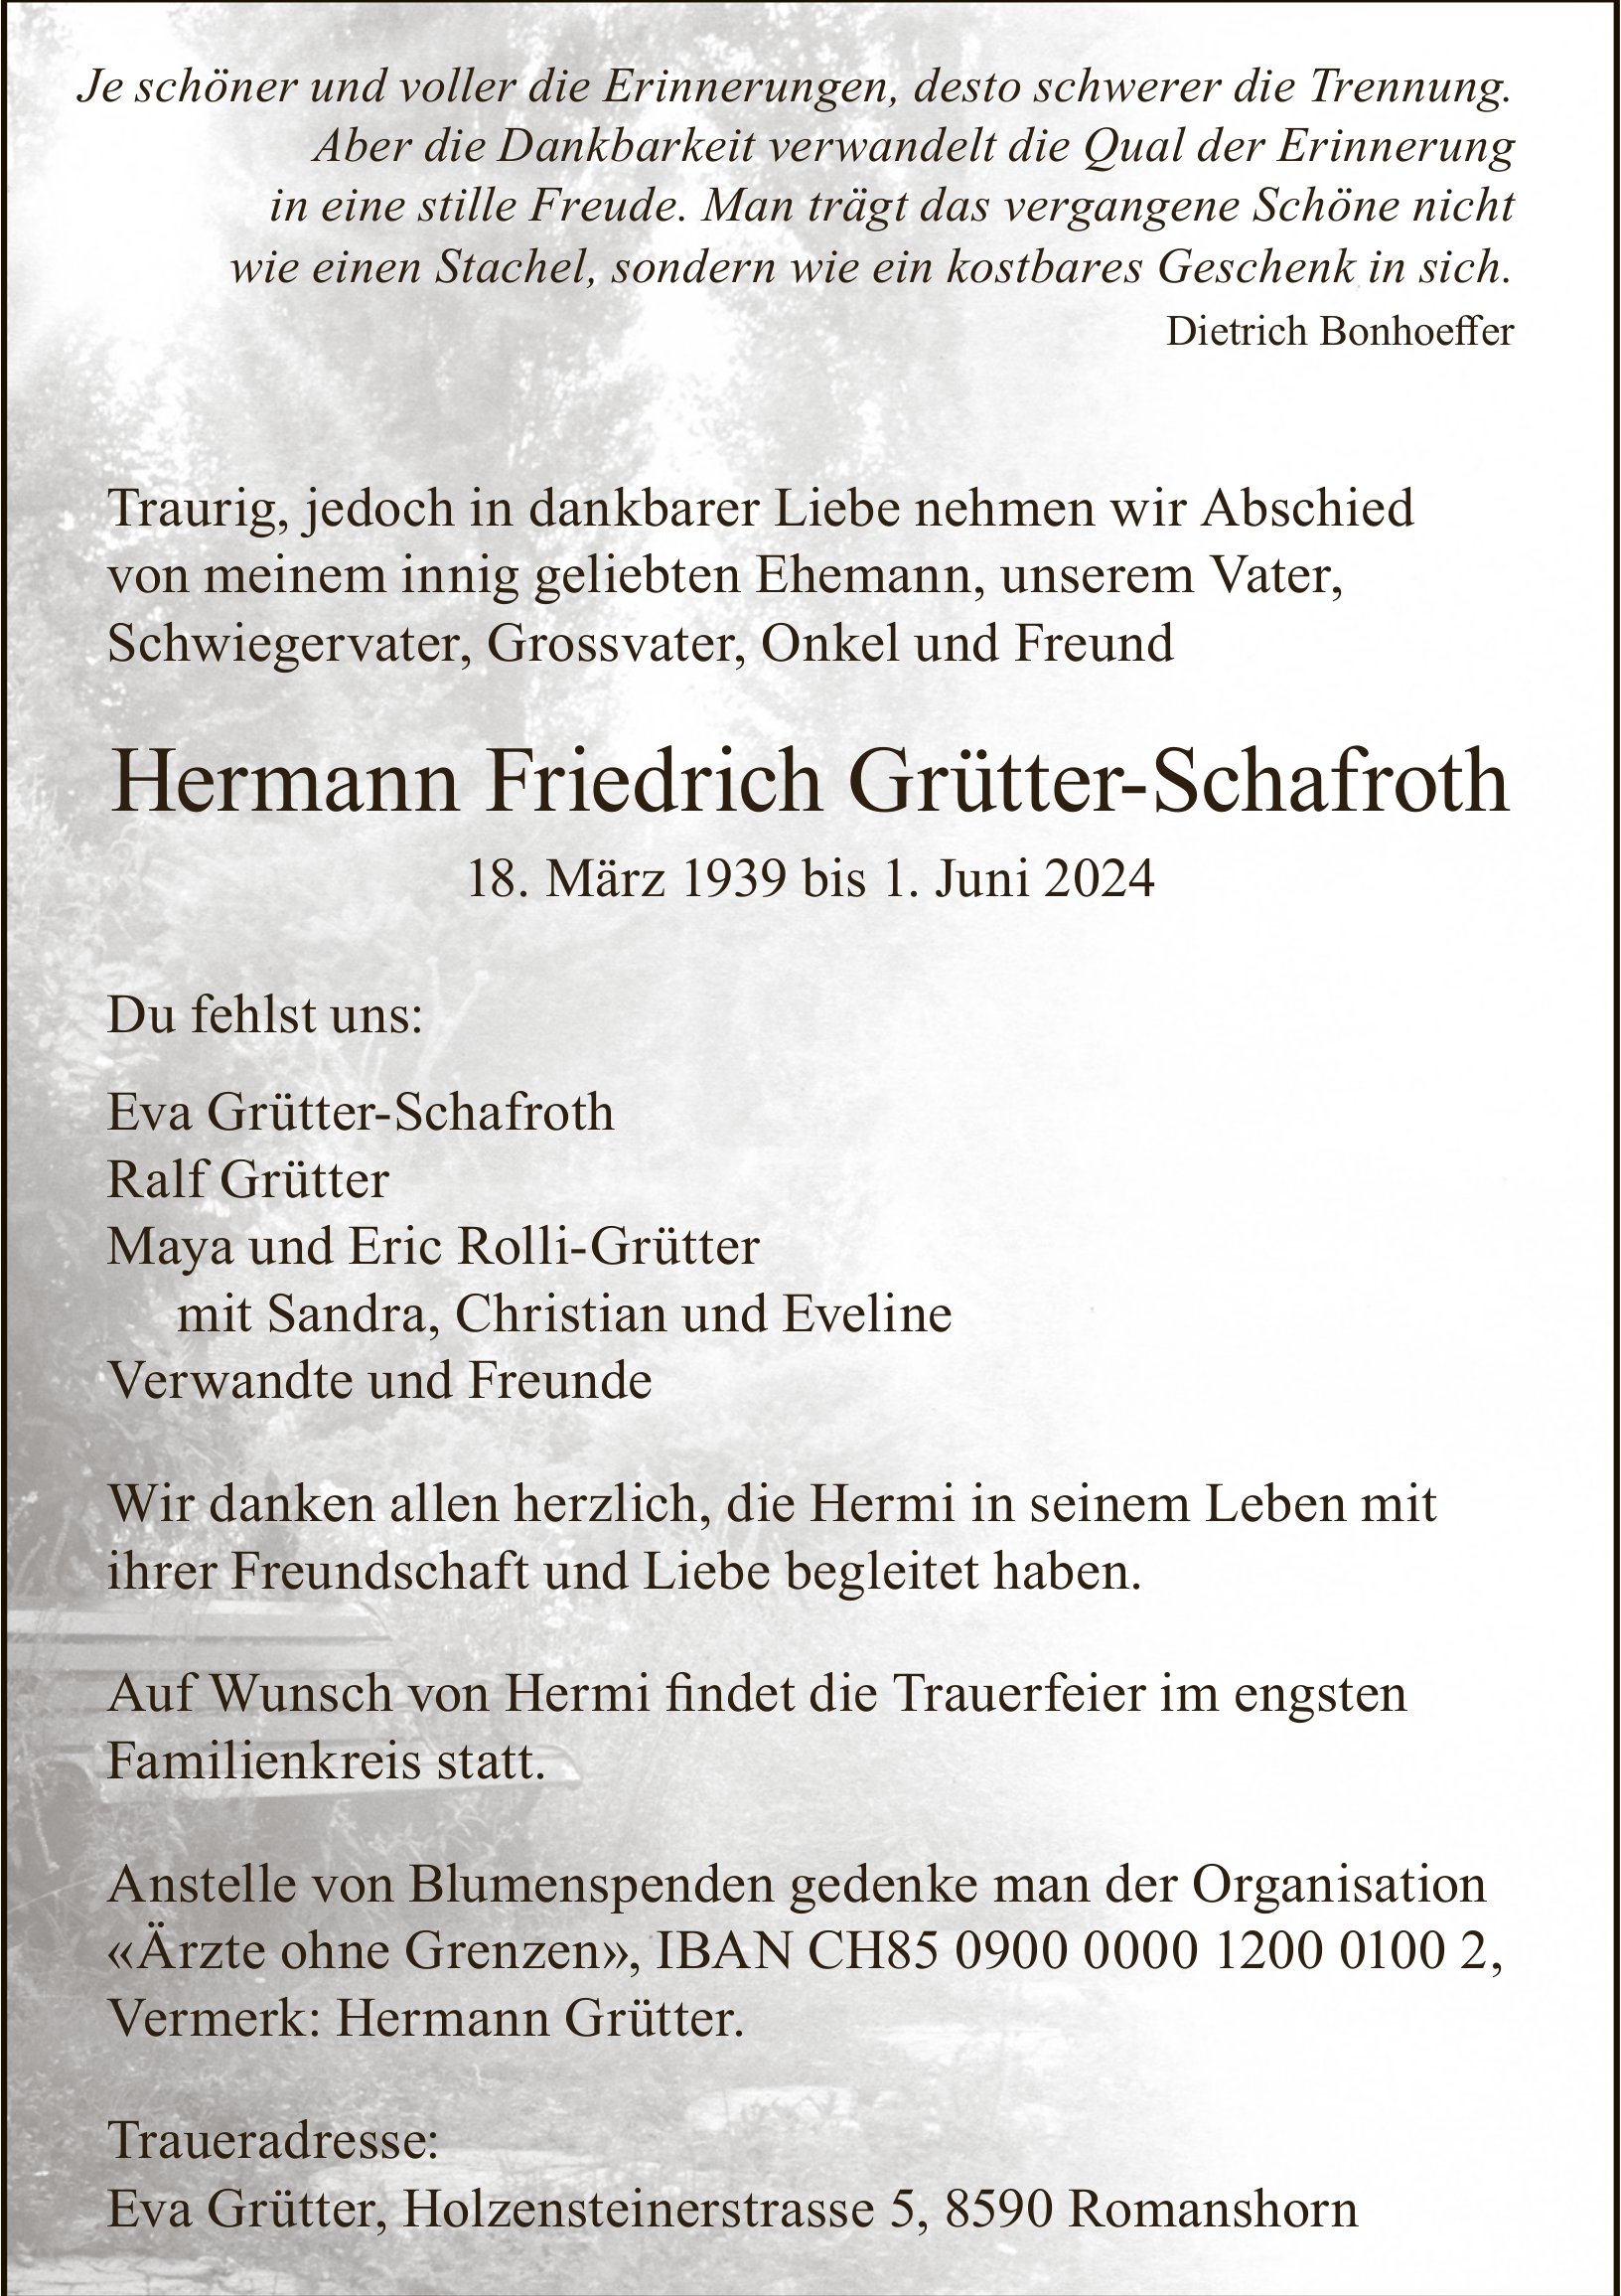 Grütter-Schafroth Hermann Friedrich, Juni 2024 / TA